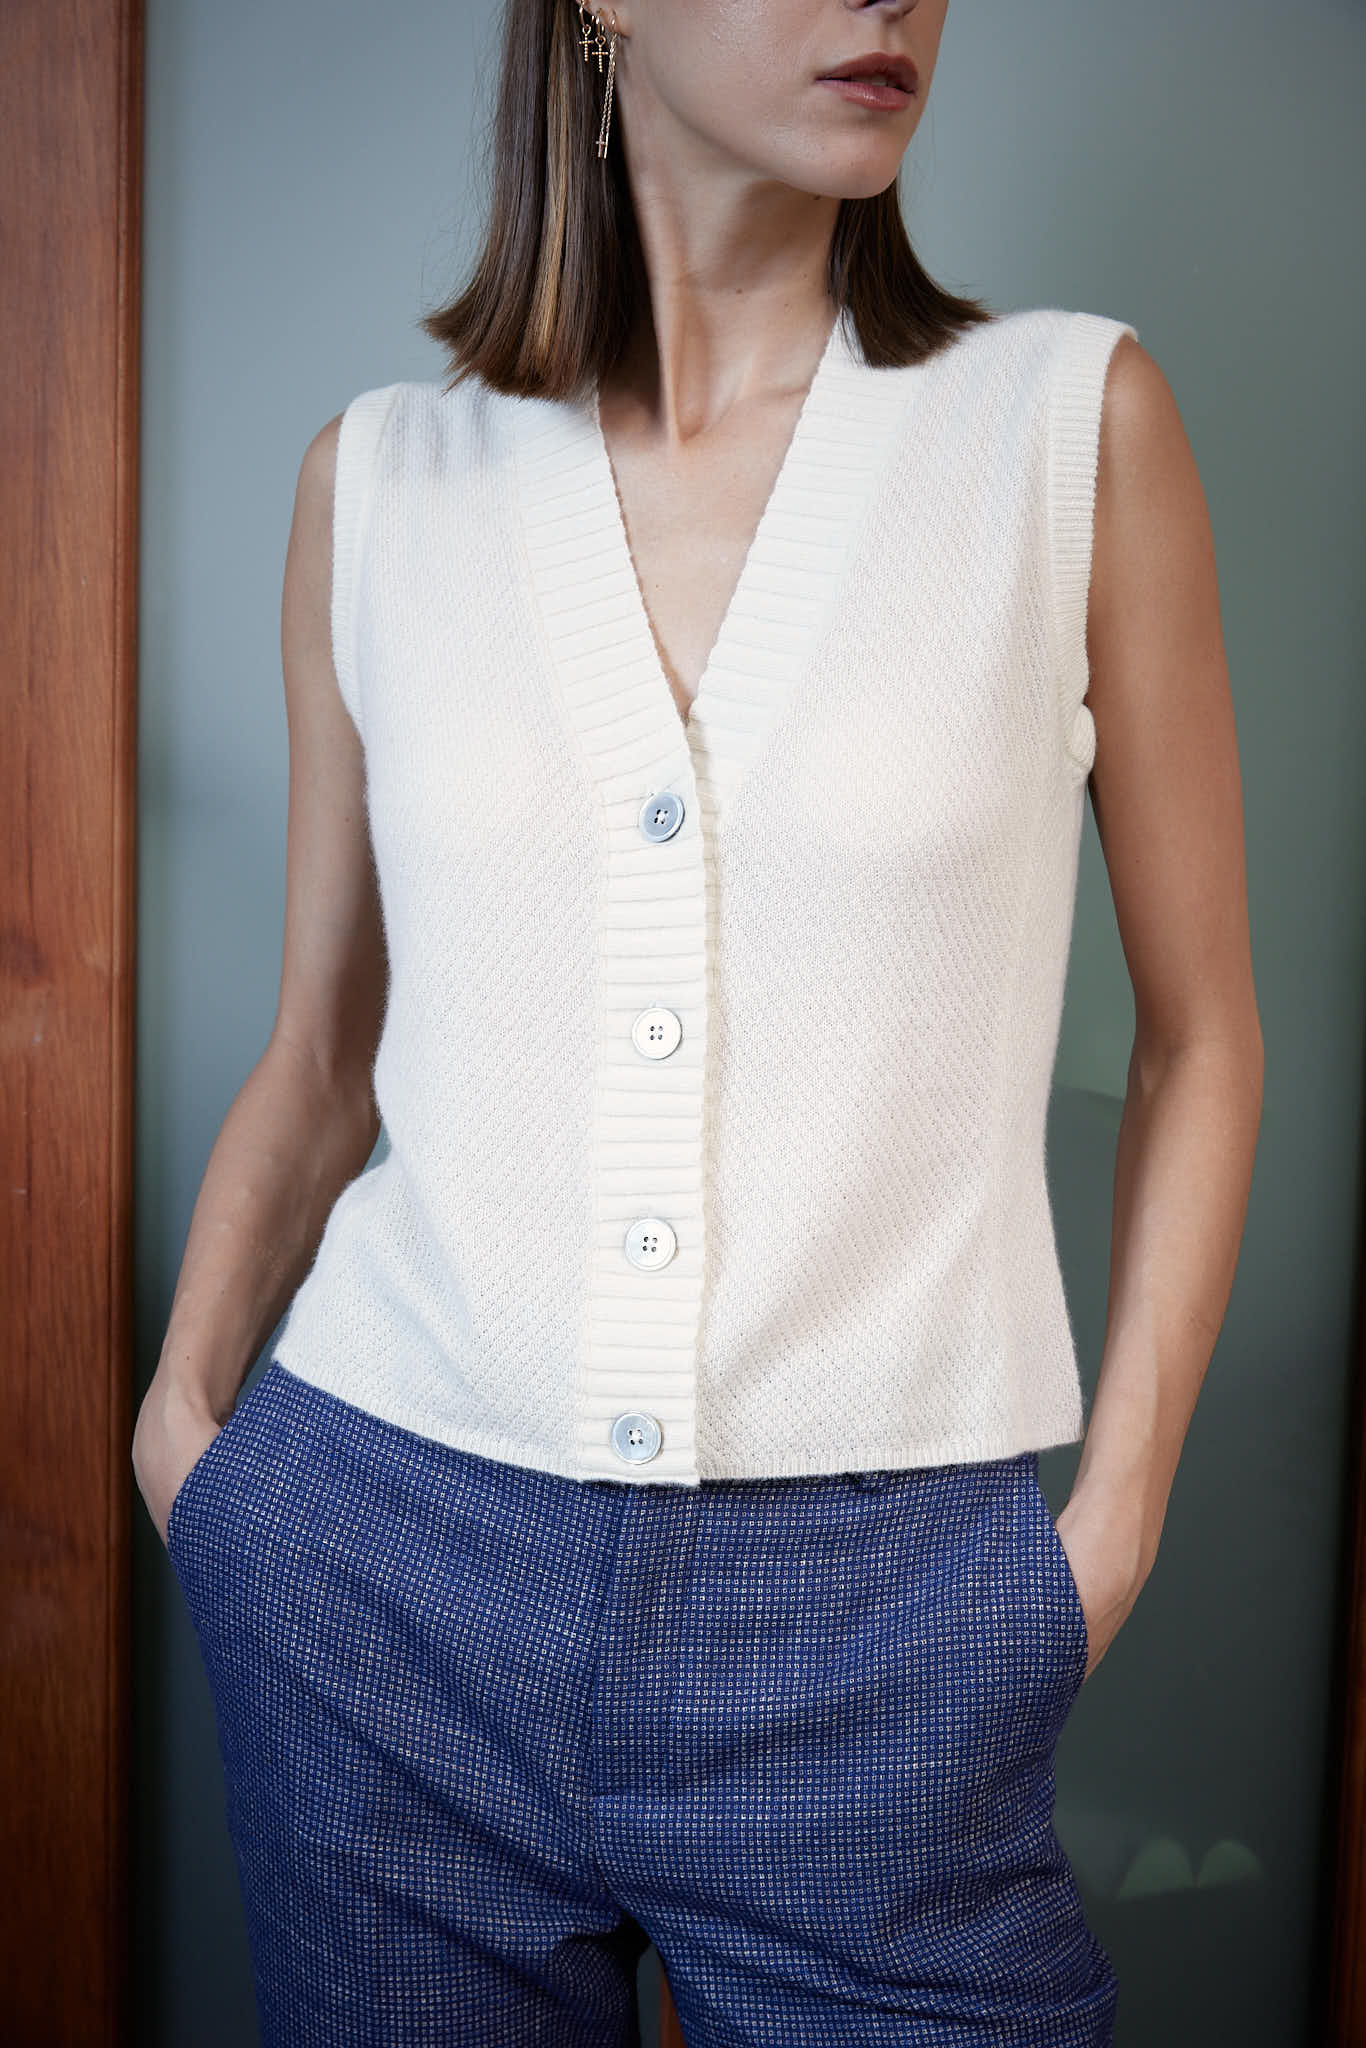 Amadora Vest – Knit vest in daisy white